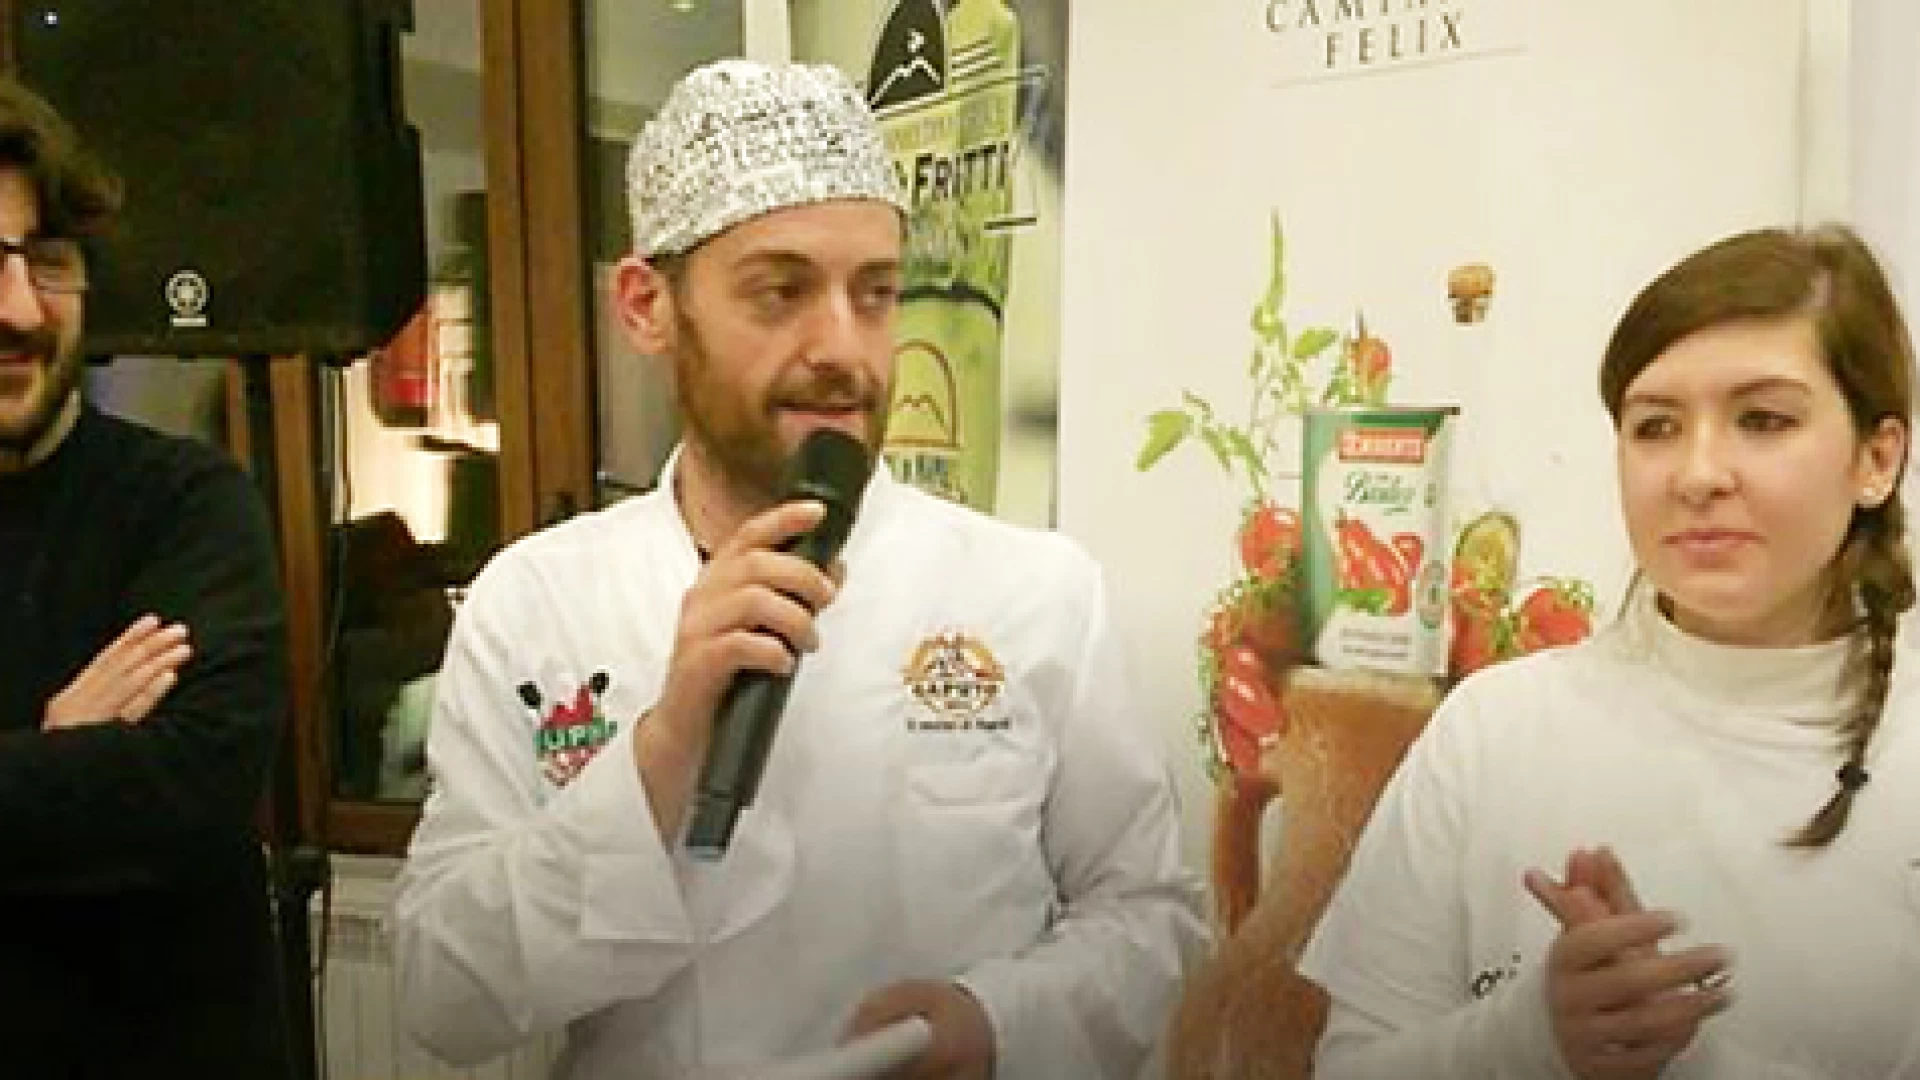 Pettoranello del Molise, una pizza ricca di solidarietà. Raccolti più di duemila euro pro Afasef e Ail. Guarda il nostro servizio video.